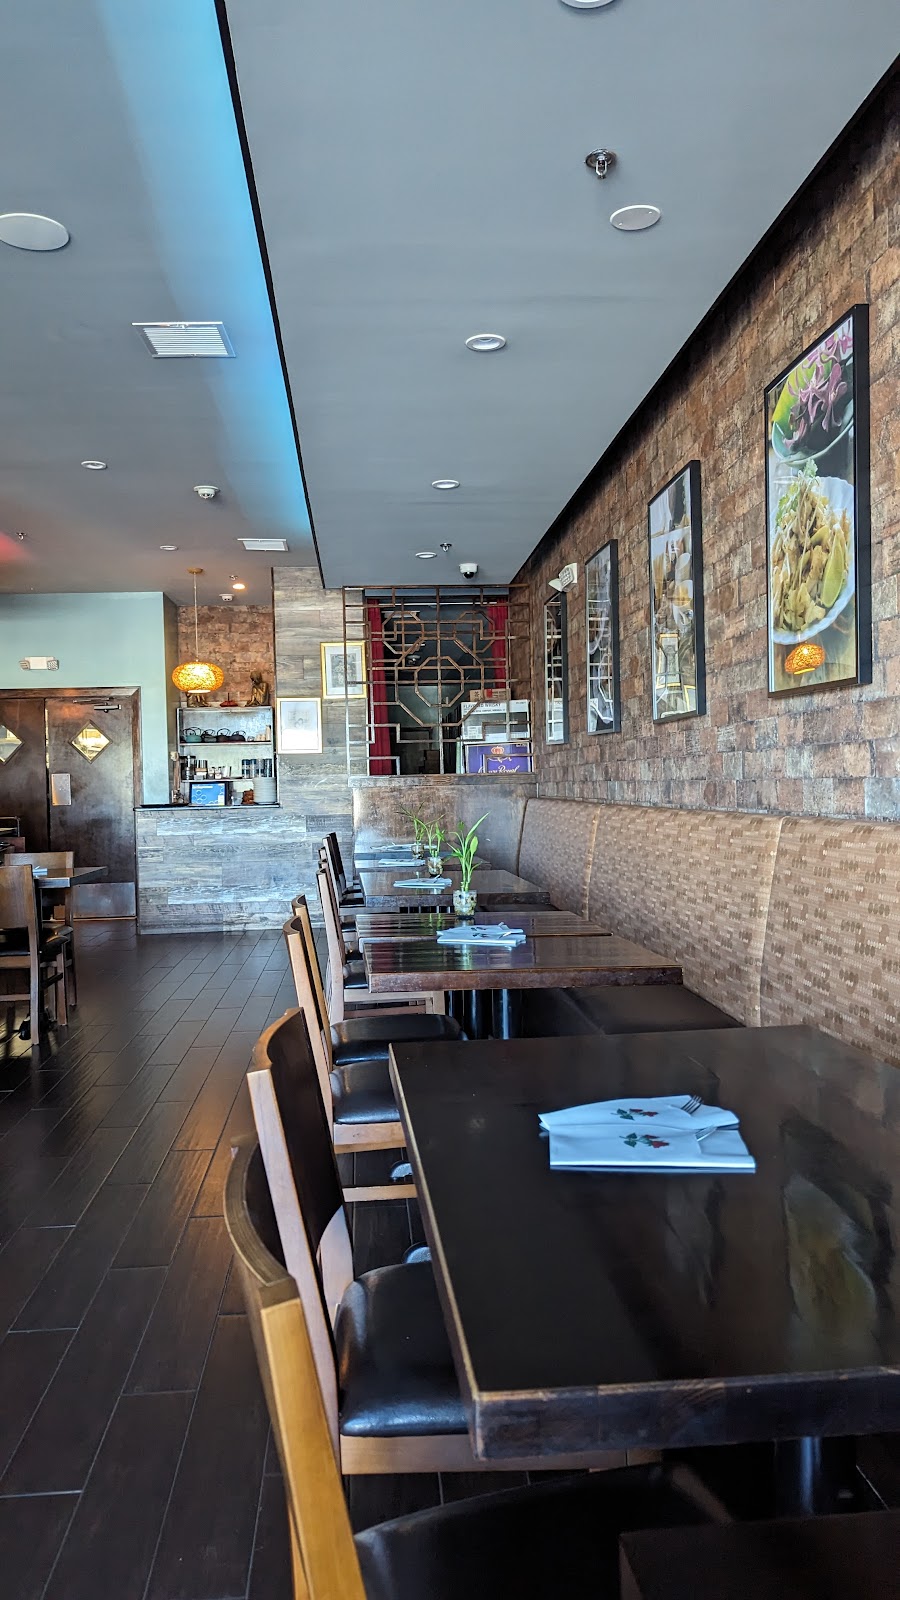 Idea Asian Restaurant | 121 Berkley Rd, Clarksboro, NJ 08020 | Phone: (856) 599-1668